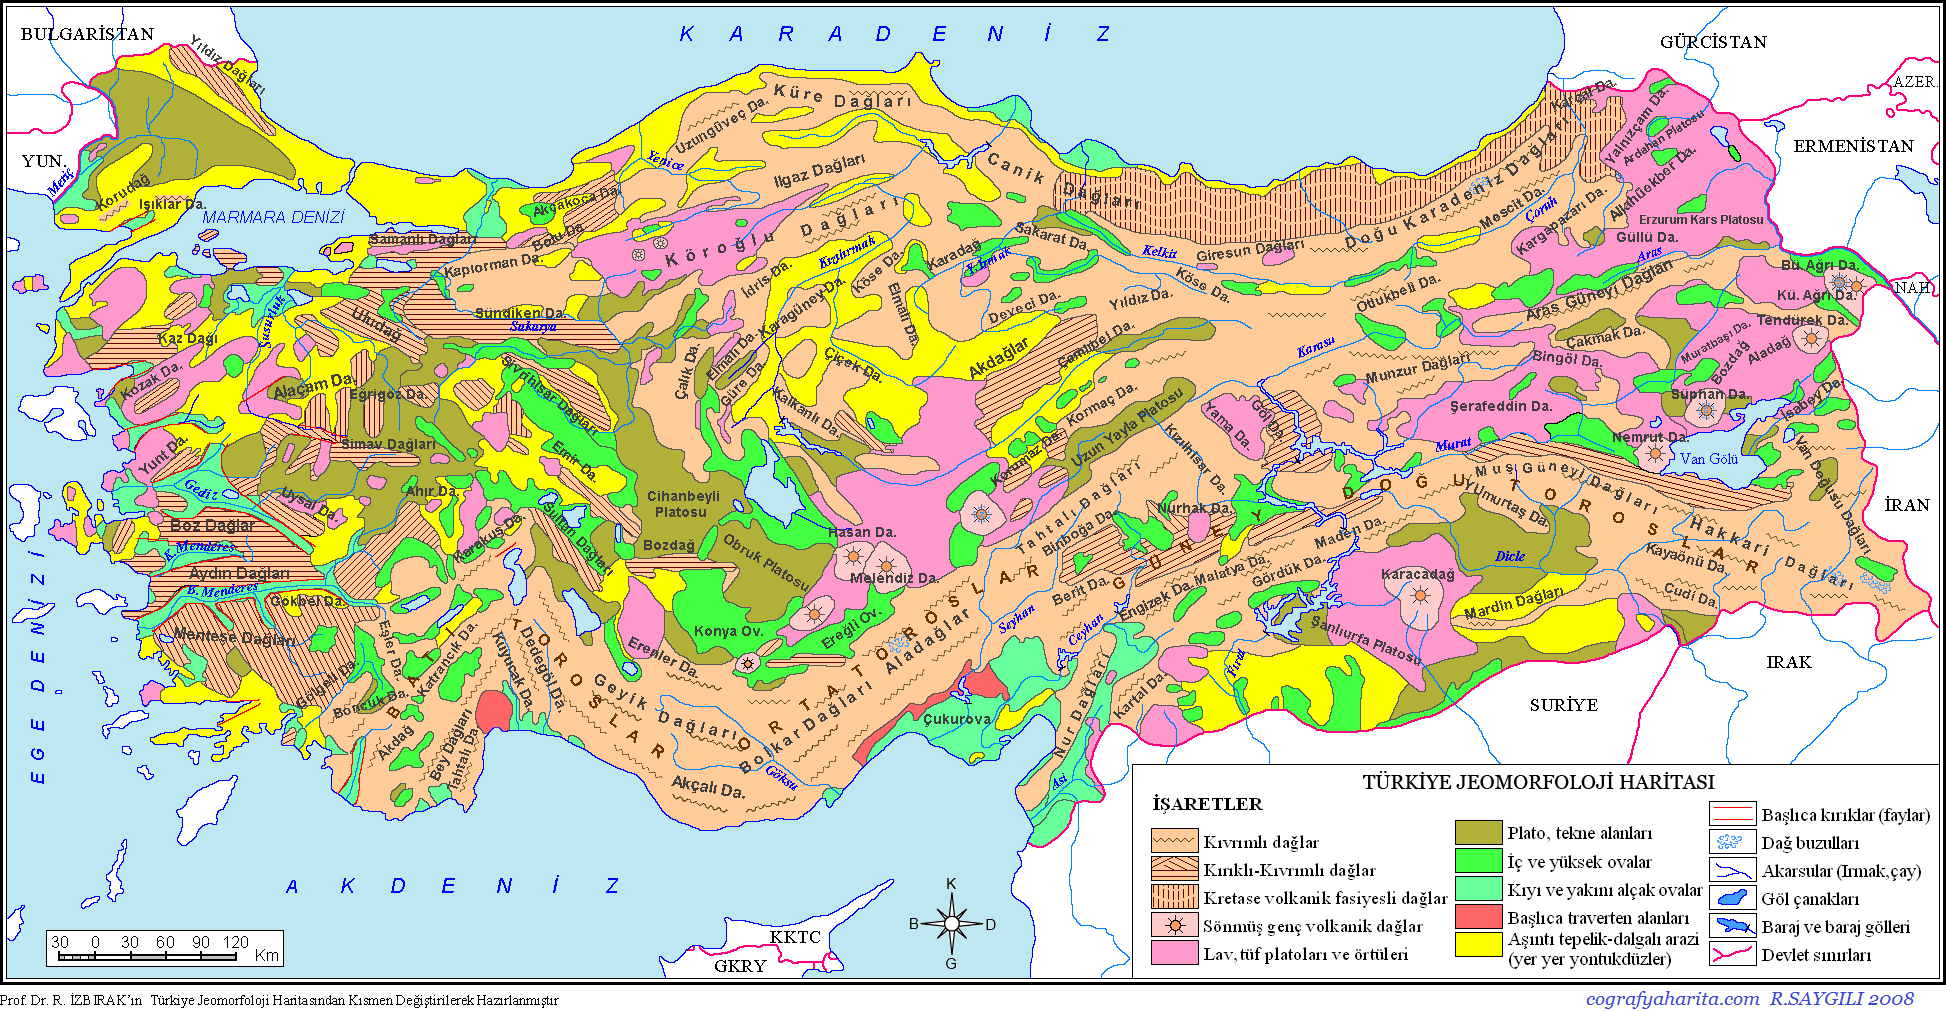 turkiye-jeomorfoloji-haritasi.png